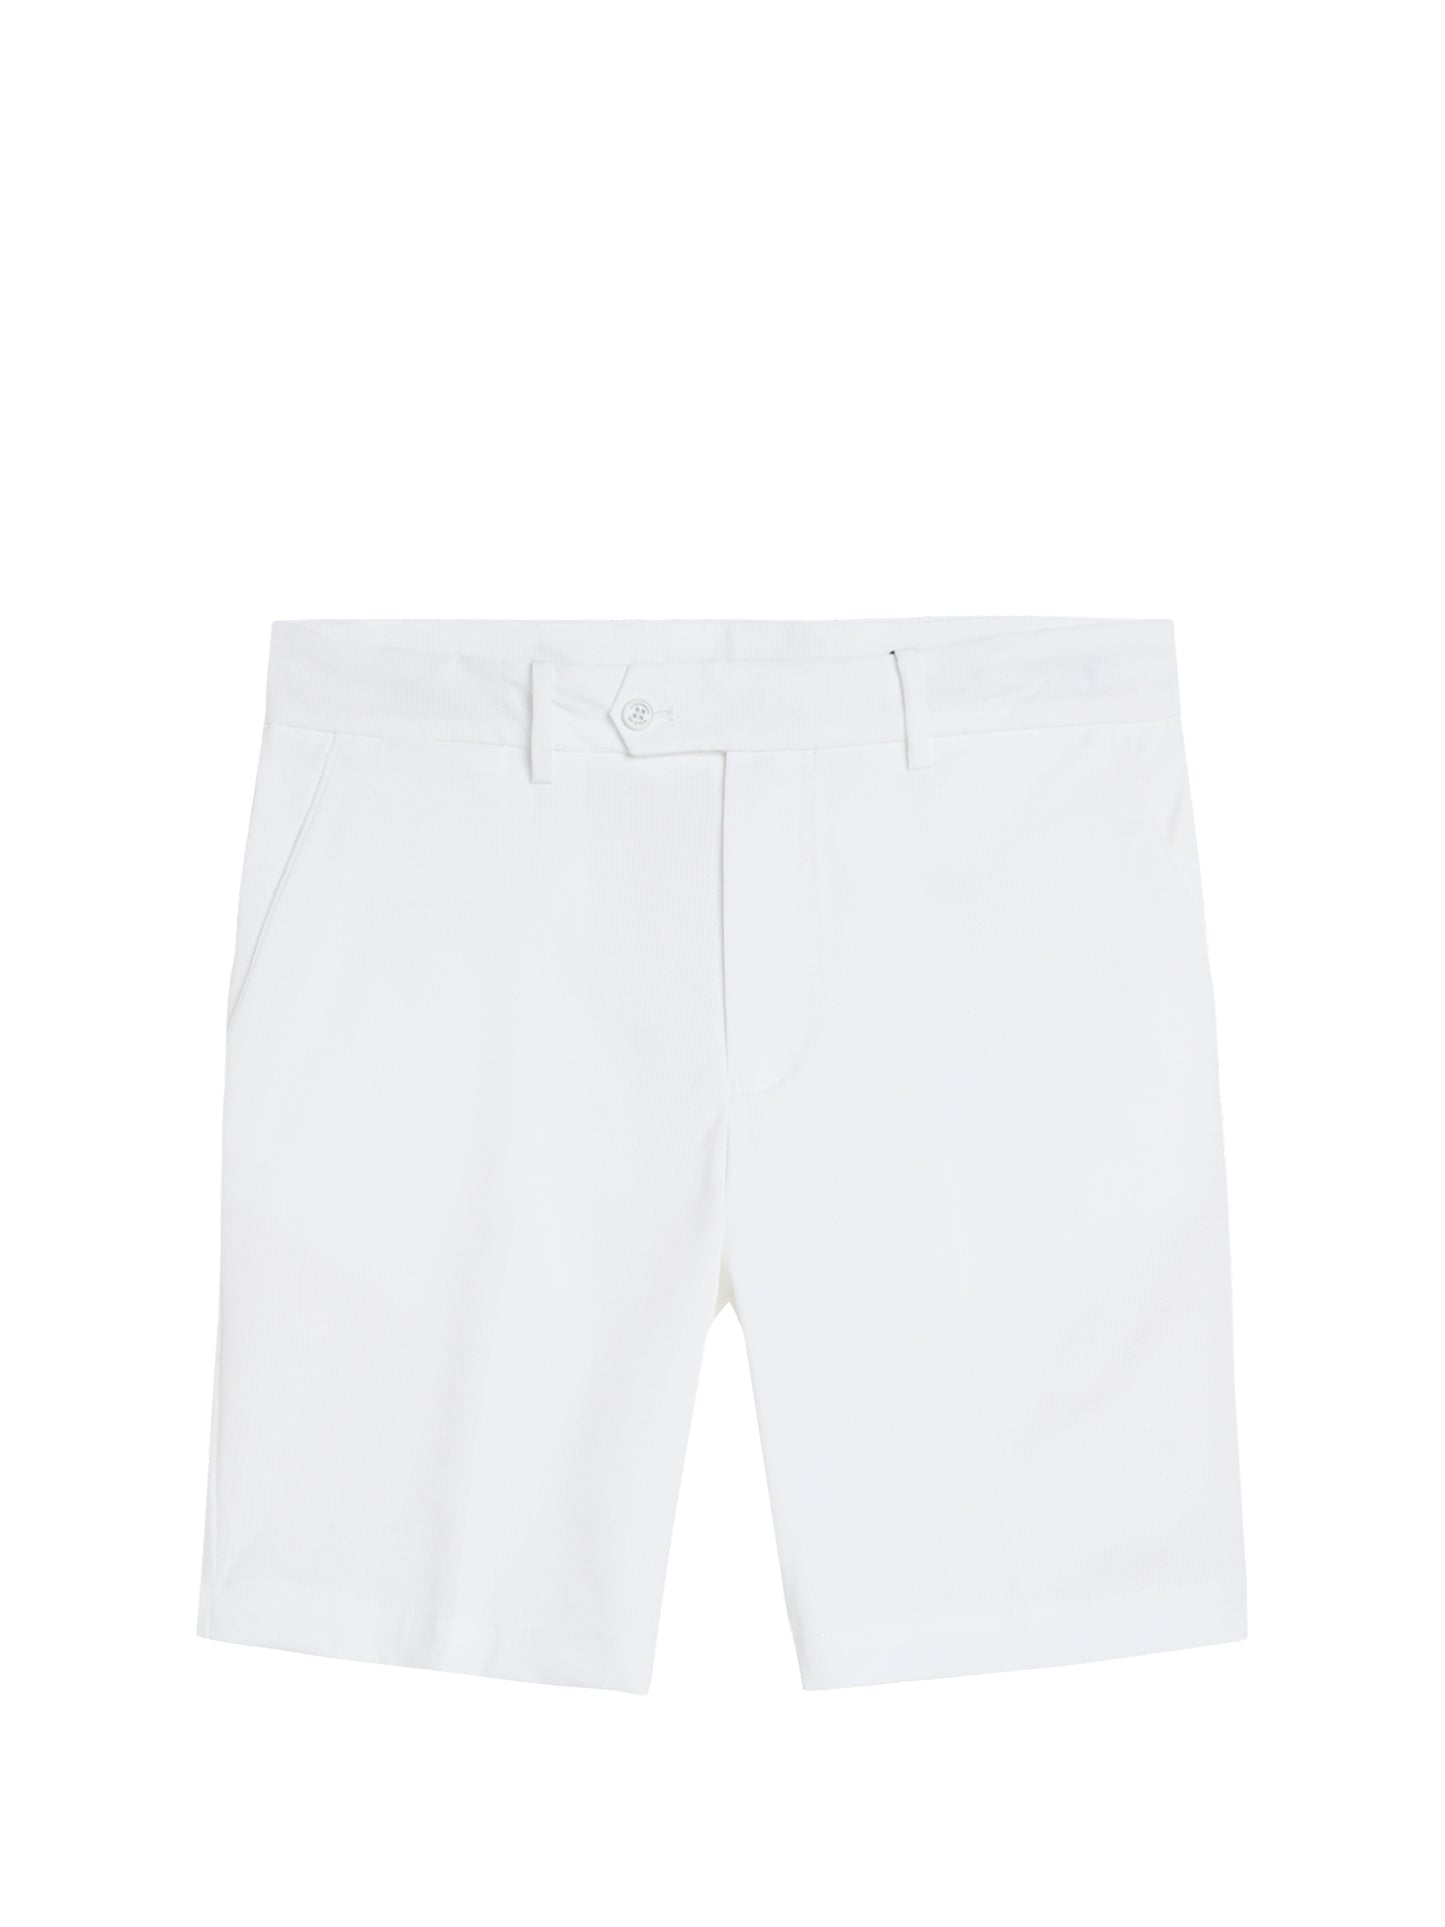 Vent Tight Shorts / White